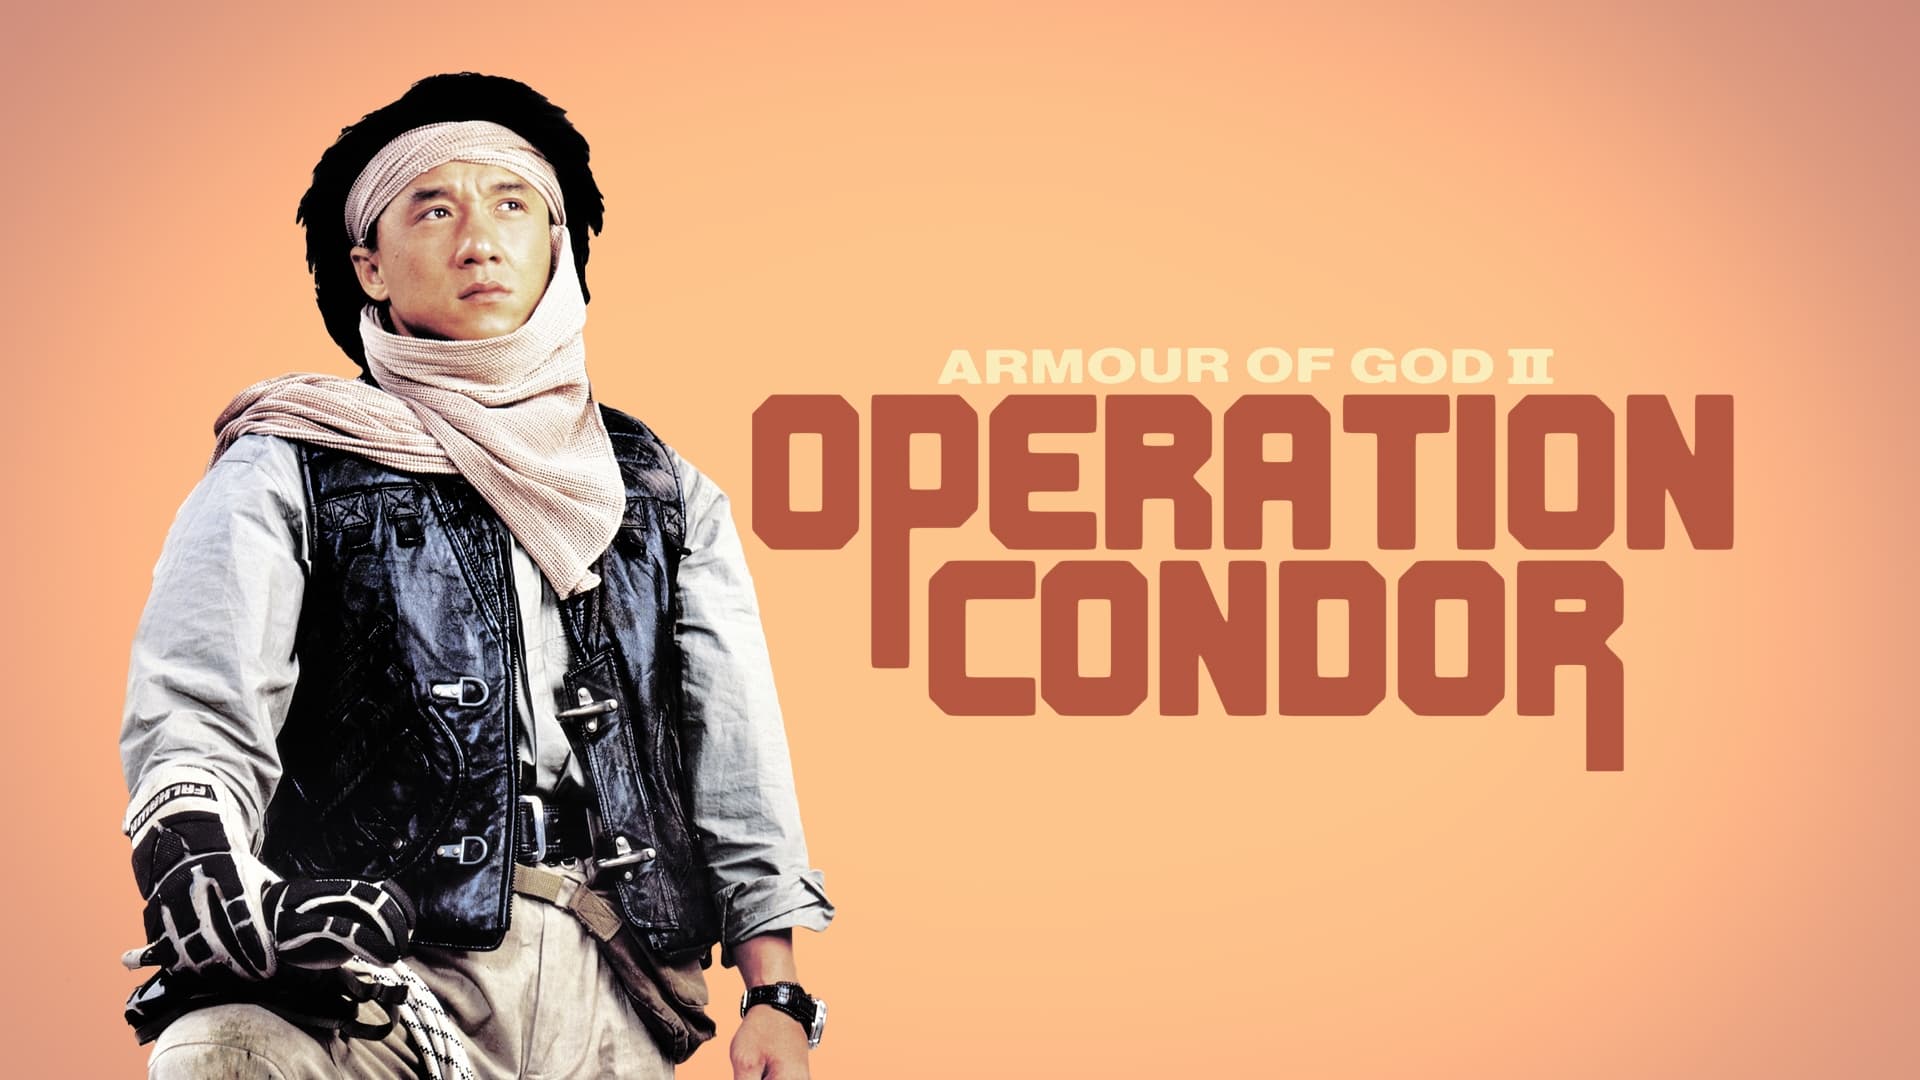 Zbroja Boga 2: Operacja Kondor (1991)